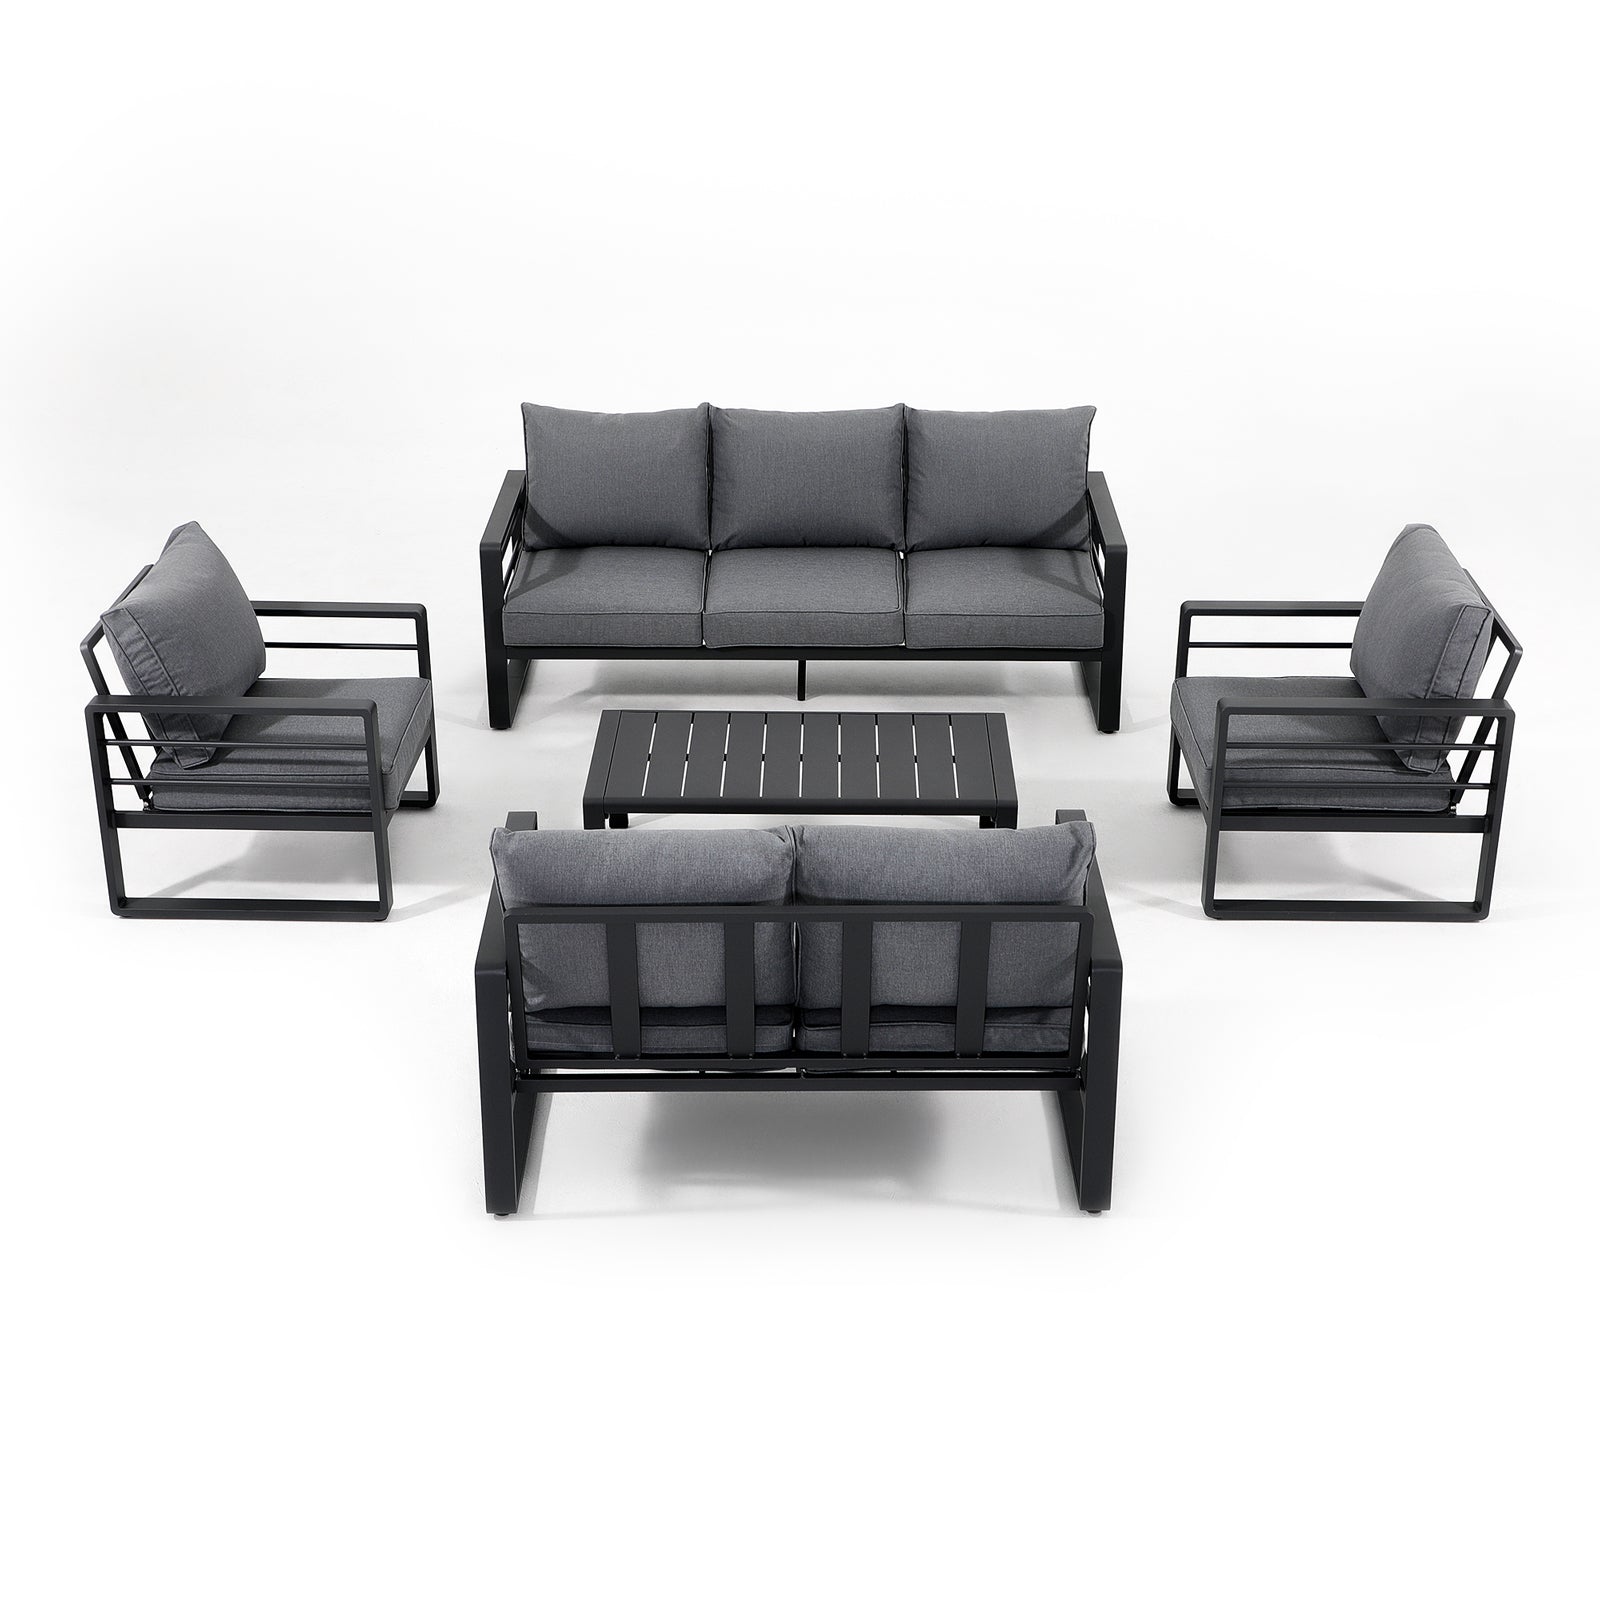 Salina Modern Aluminum Outdoor Furniture, Dark Grey Aluminum Frame Outdoor Conversation Set with grey cushions, for 7-person - Jardina Furniture